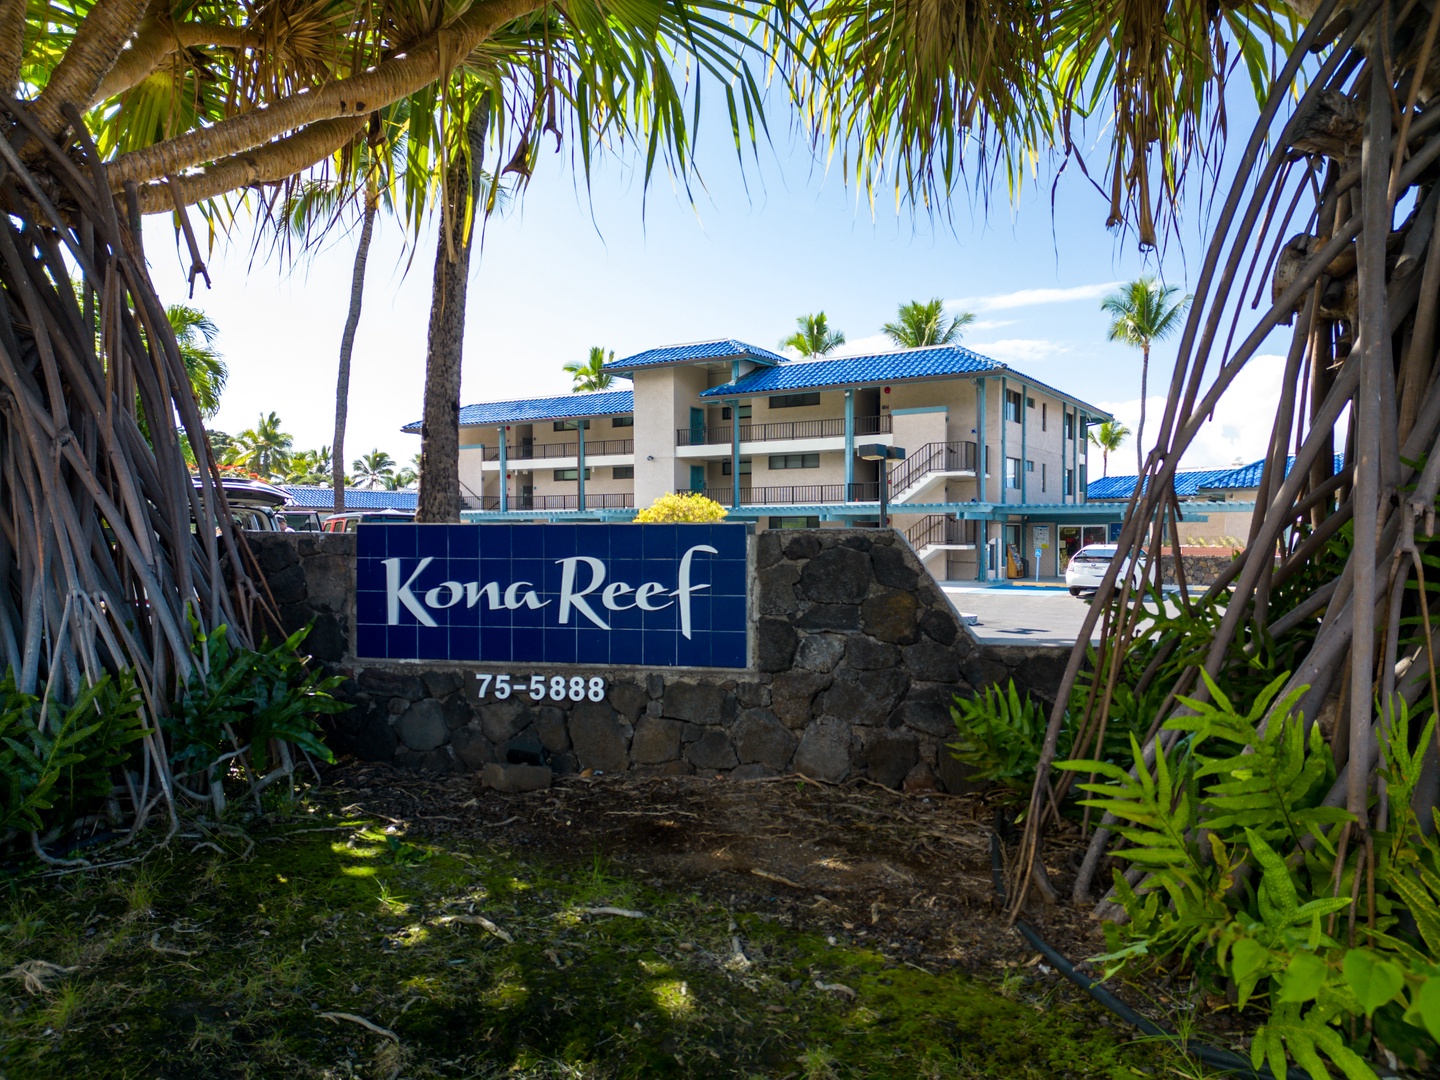 Kona Reef